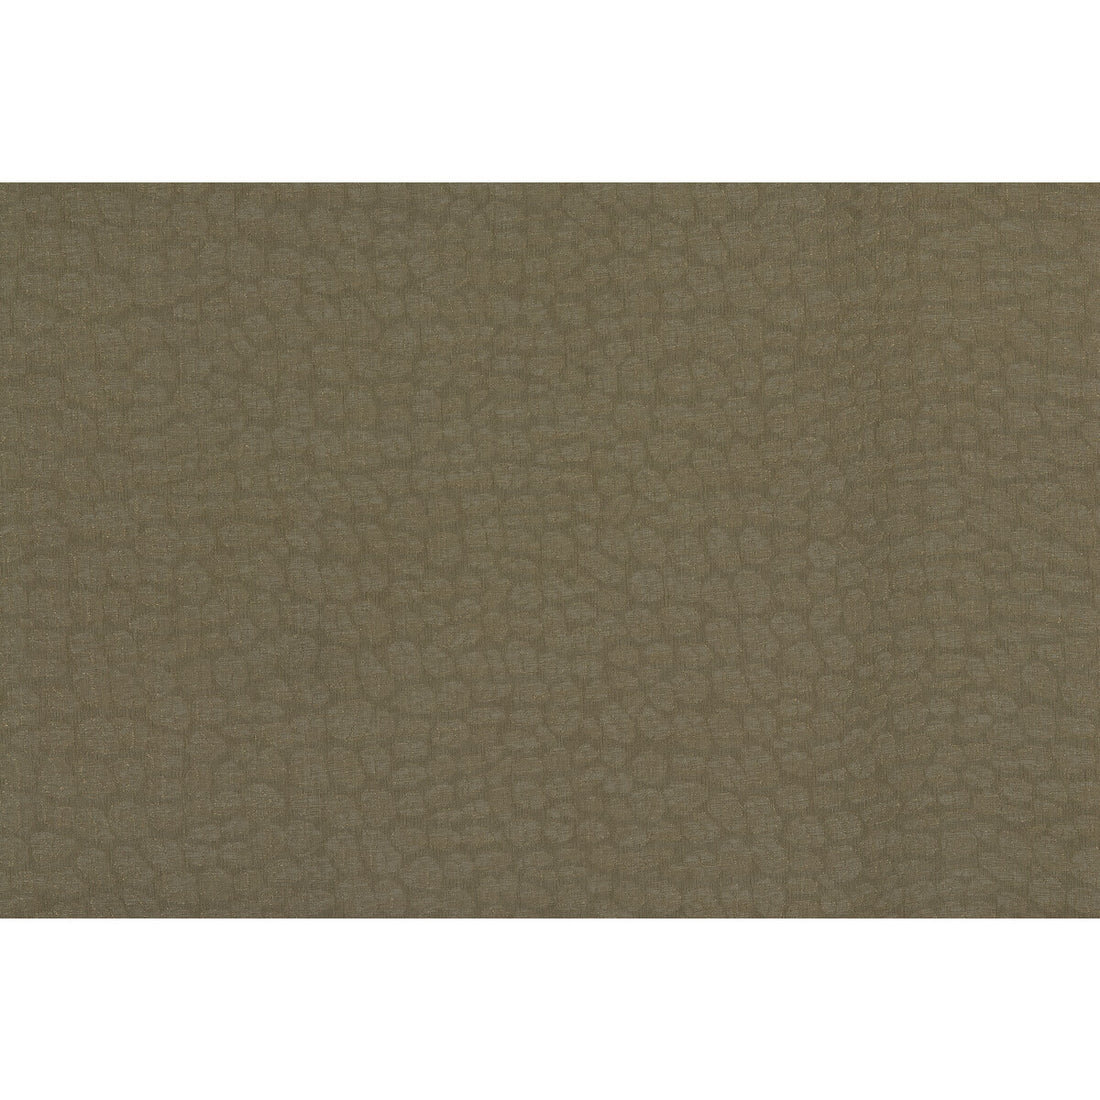 Kravet Basics fabric in 4294-6 color - pattern 4294.6.0 - by Kravet Basics